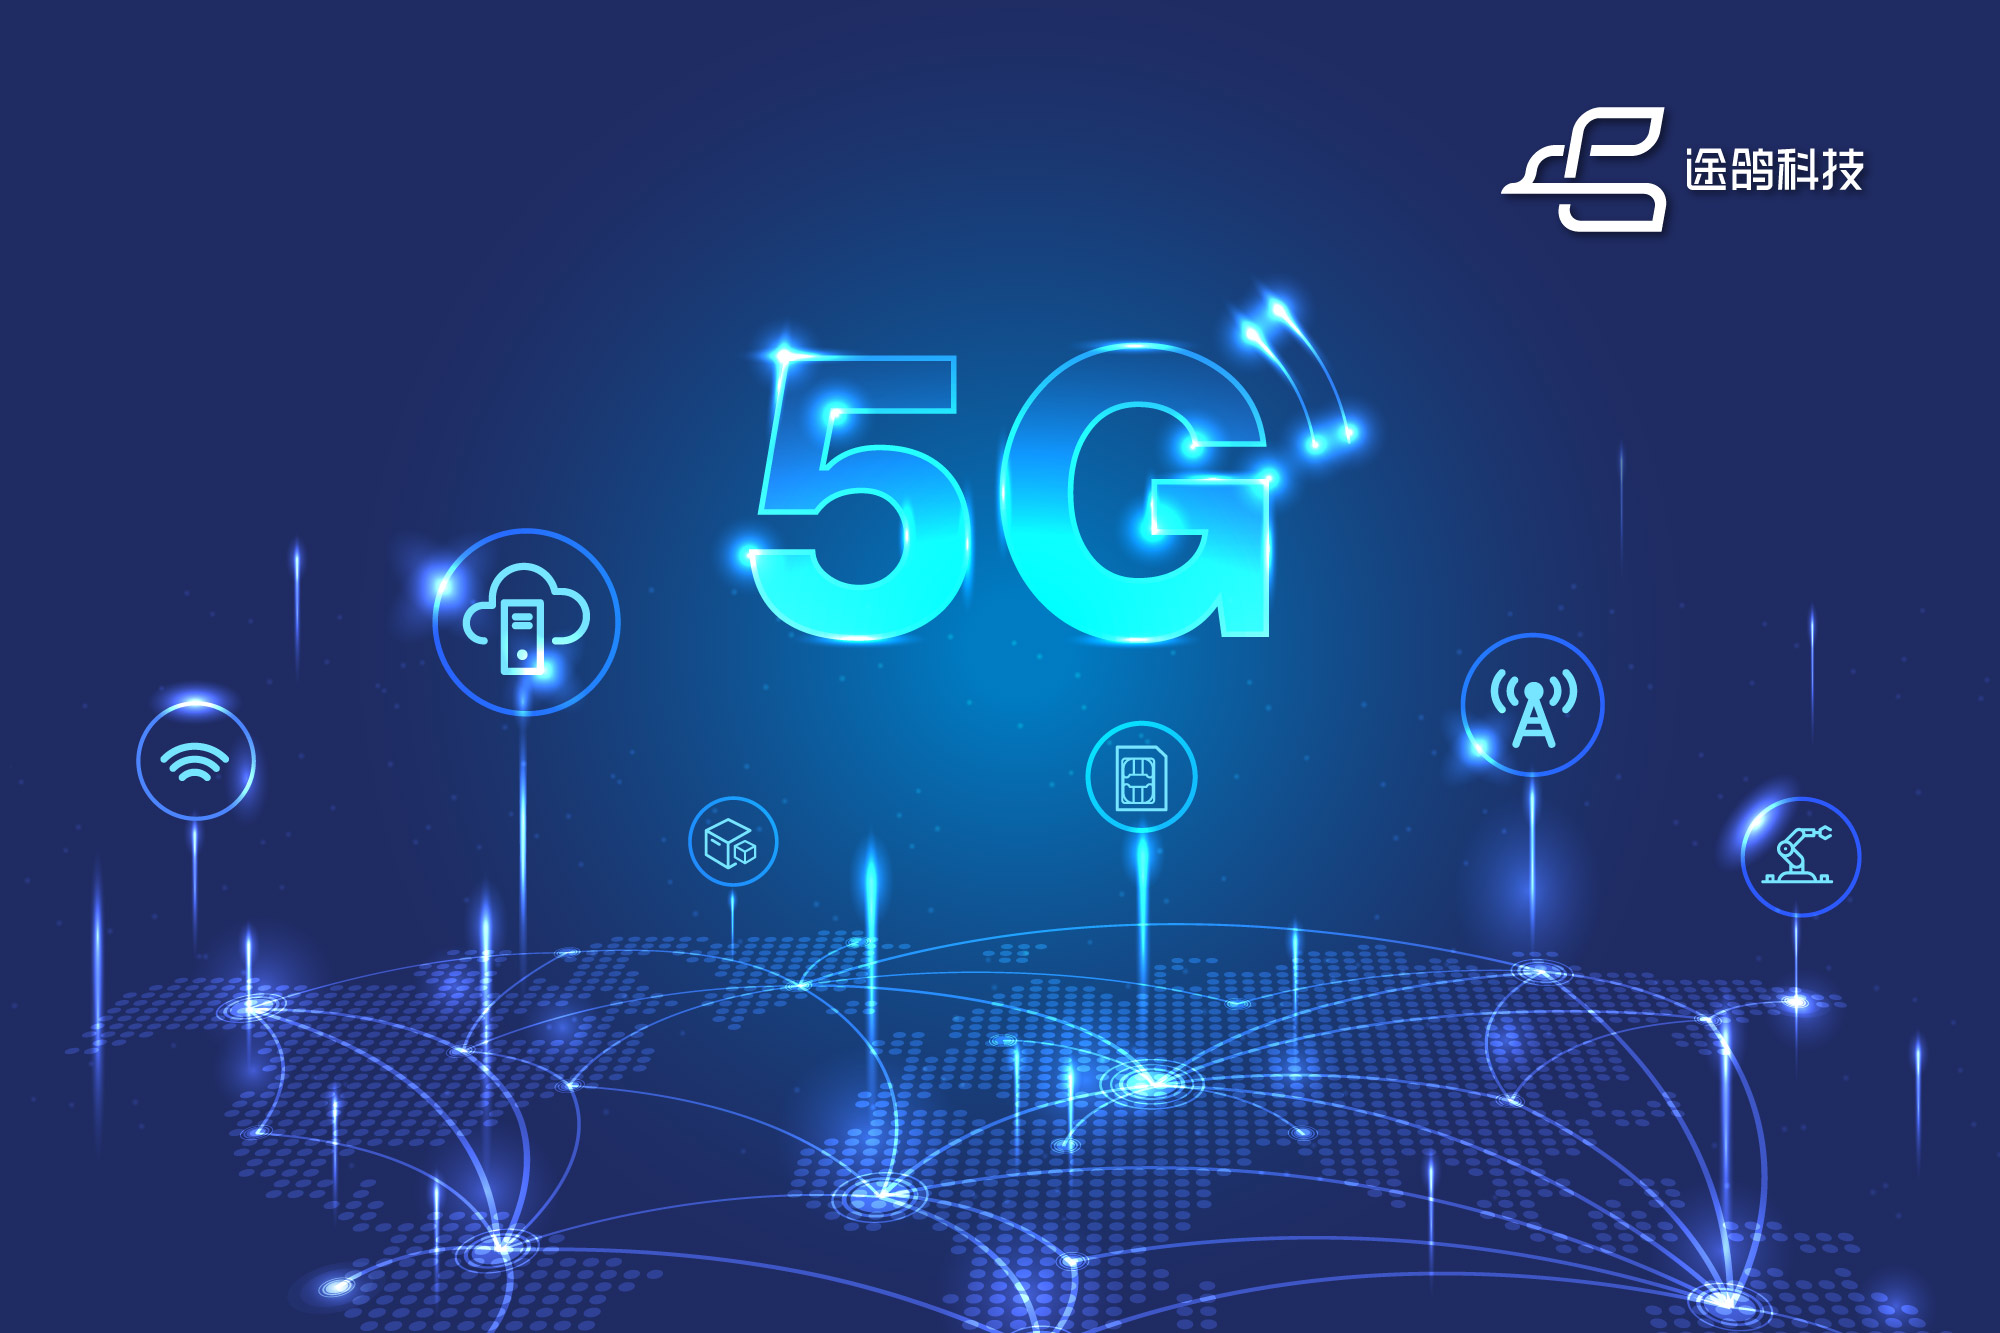 途鸽科技宣布全球移动通信物联网平台全面升级至5G